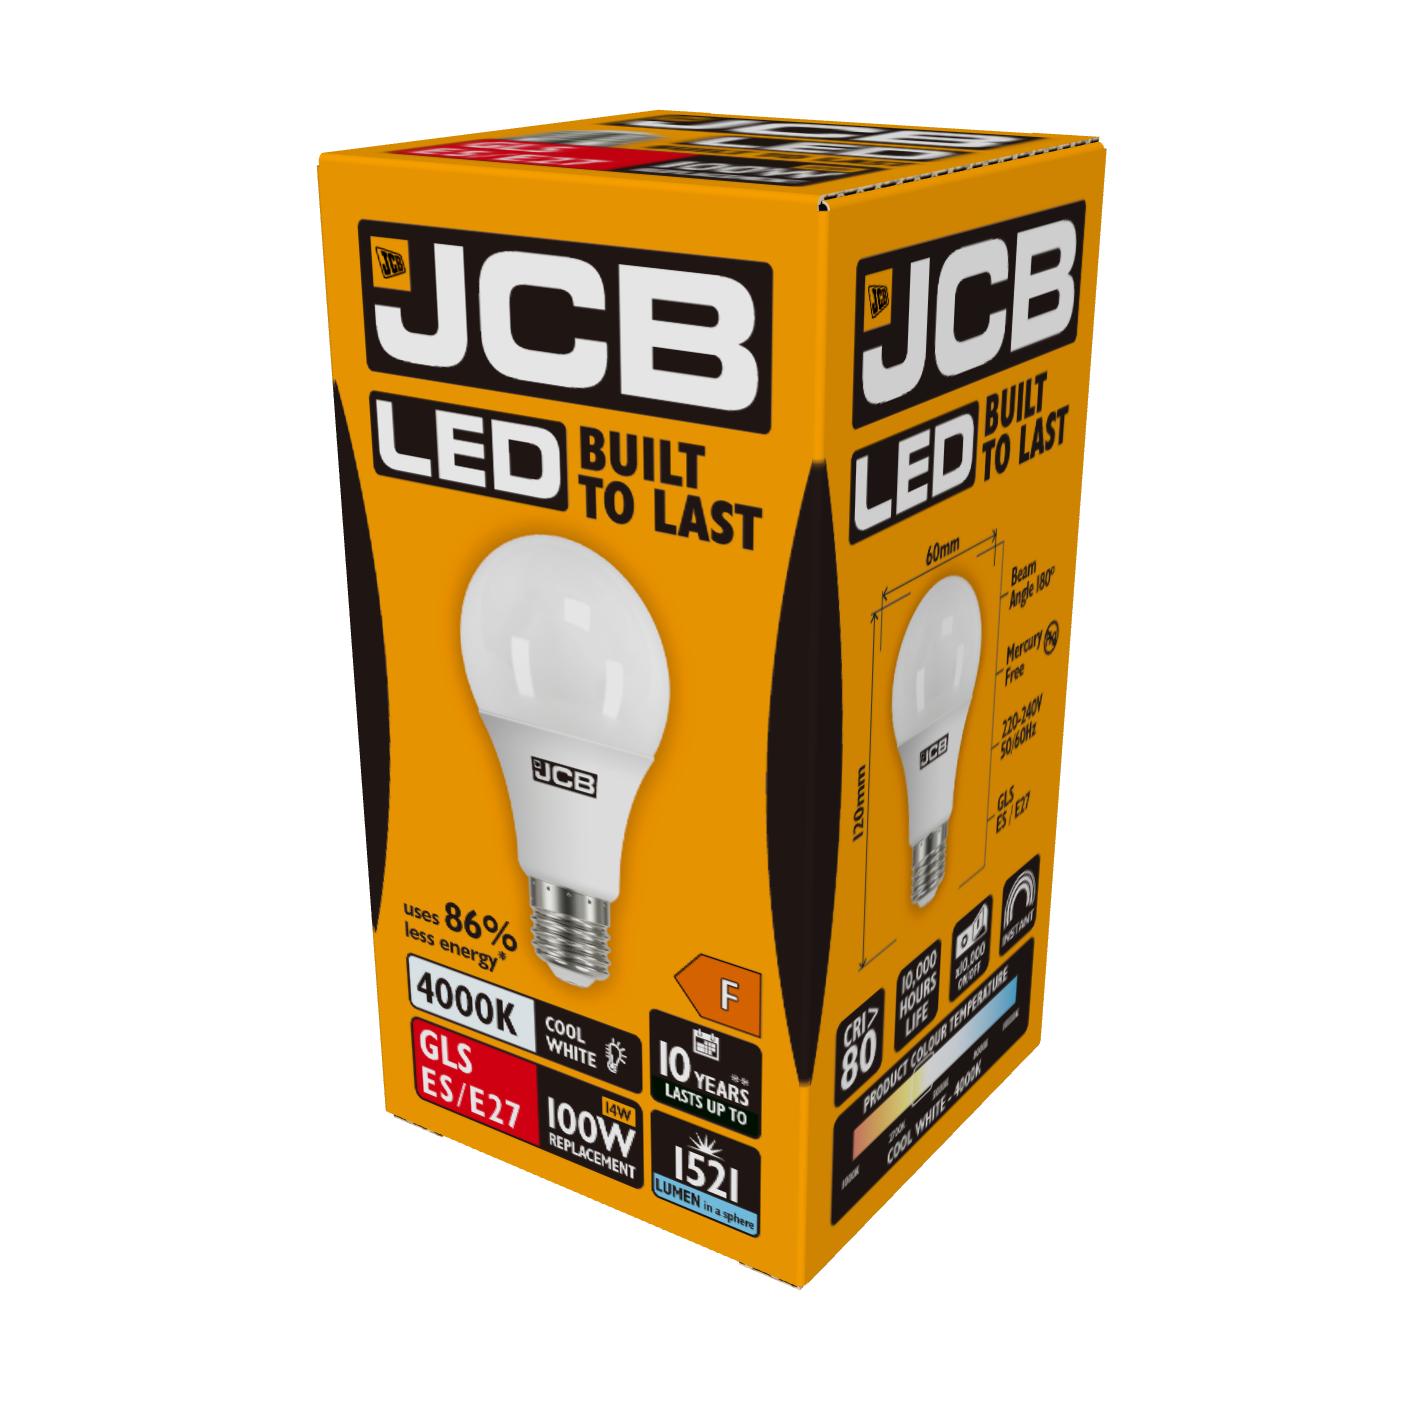 JCB LED GLS E27 (ES) 1.521 lm 14 W 4.000 K (kaltweiß), Packung mit 1 Stück